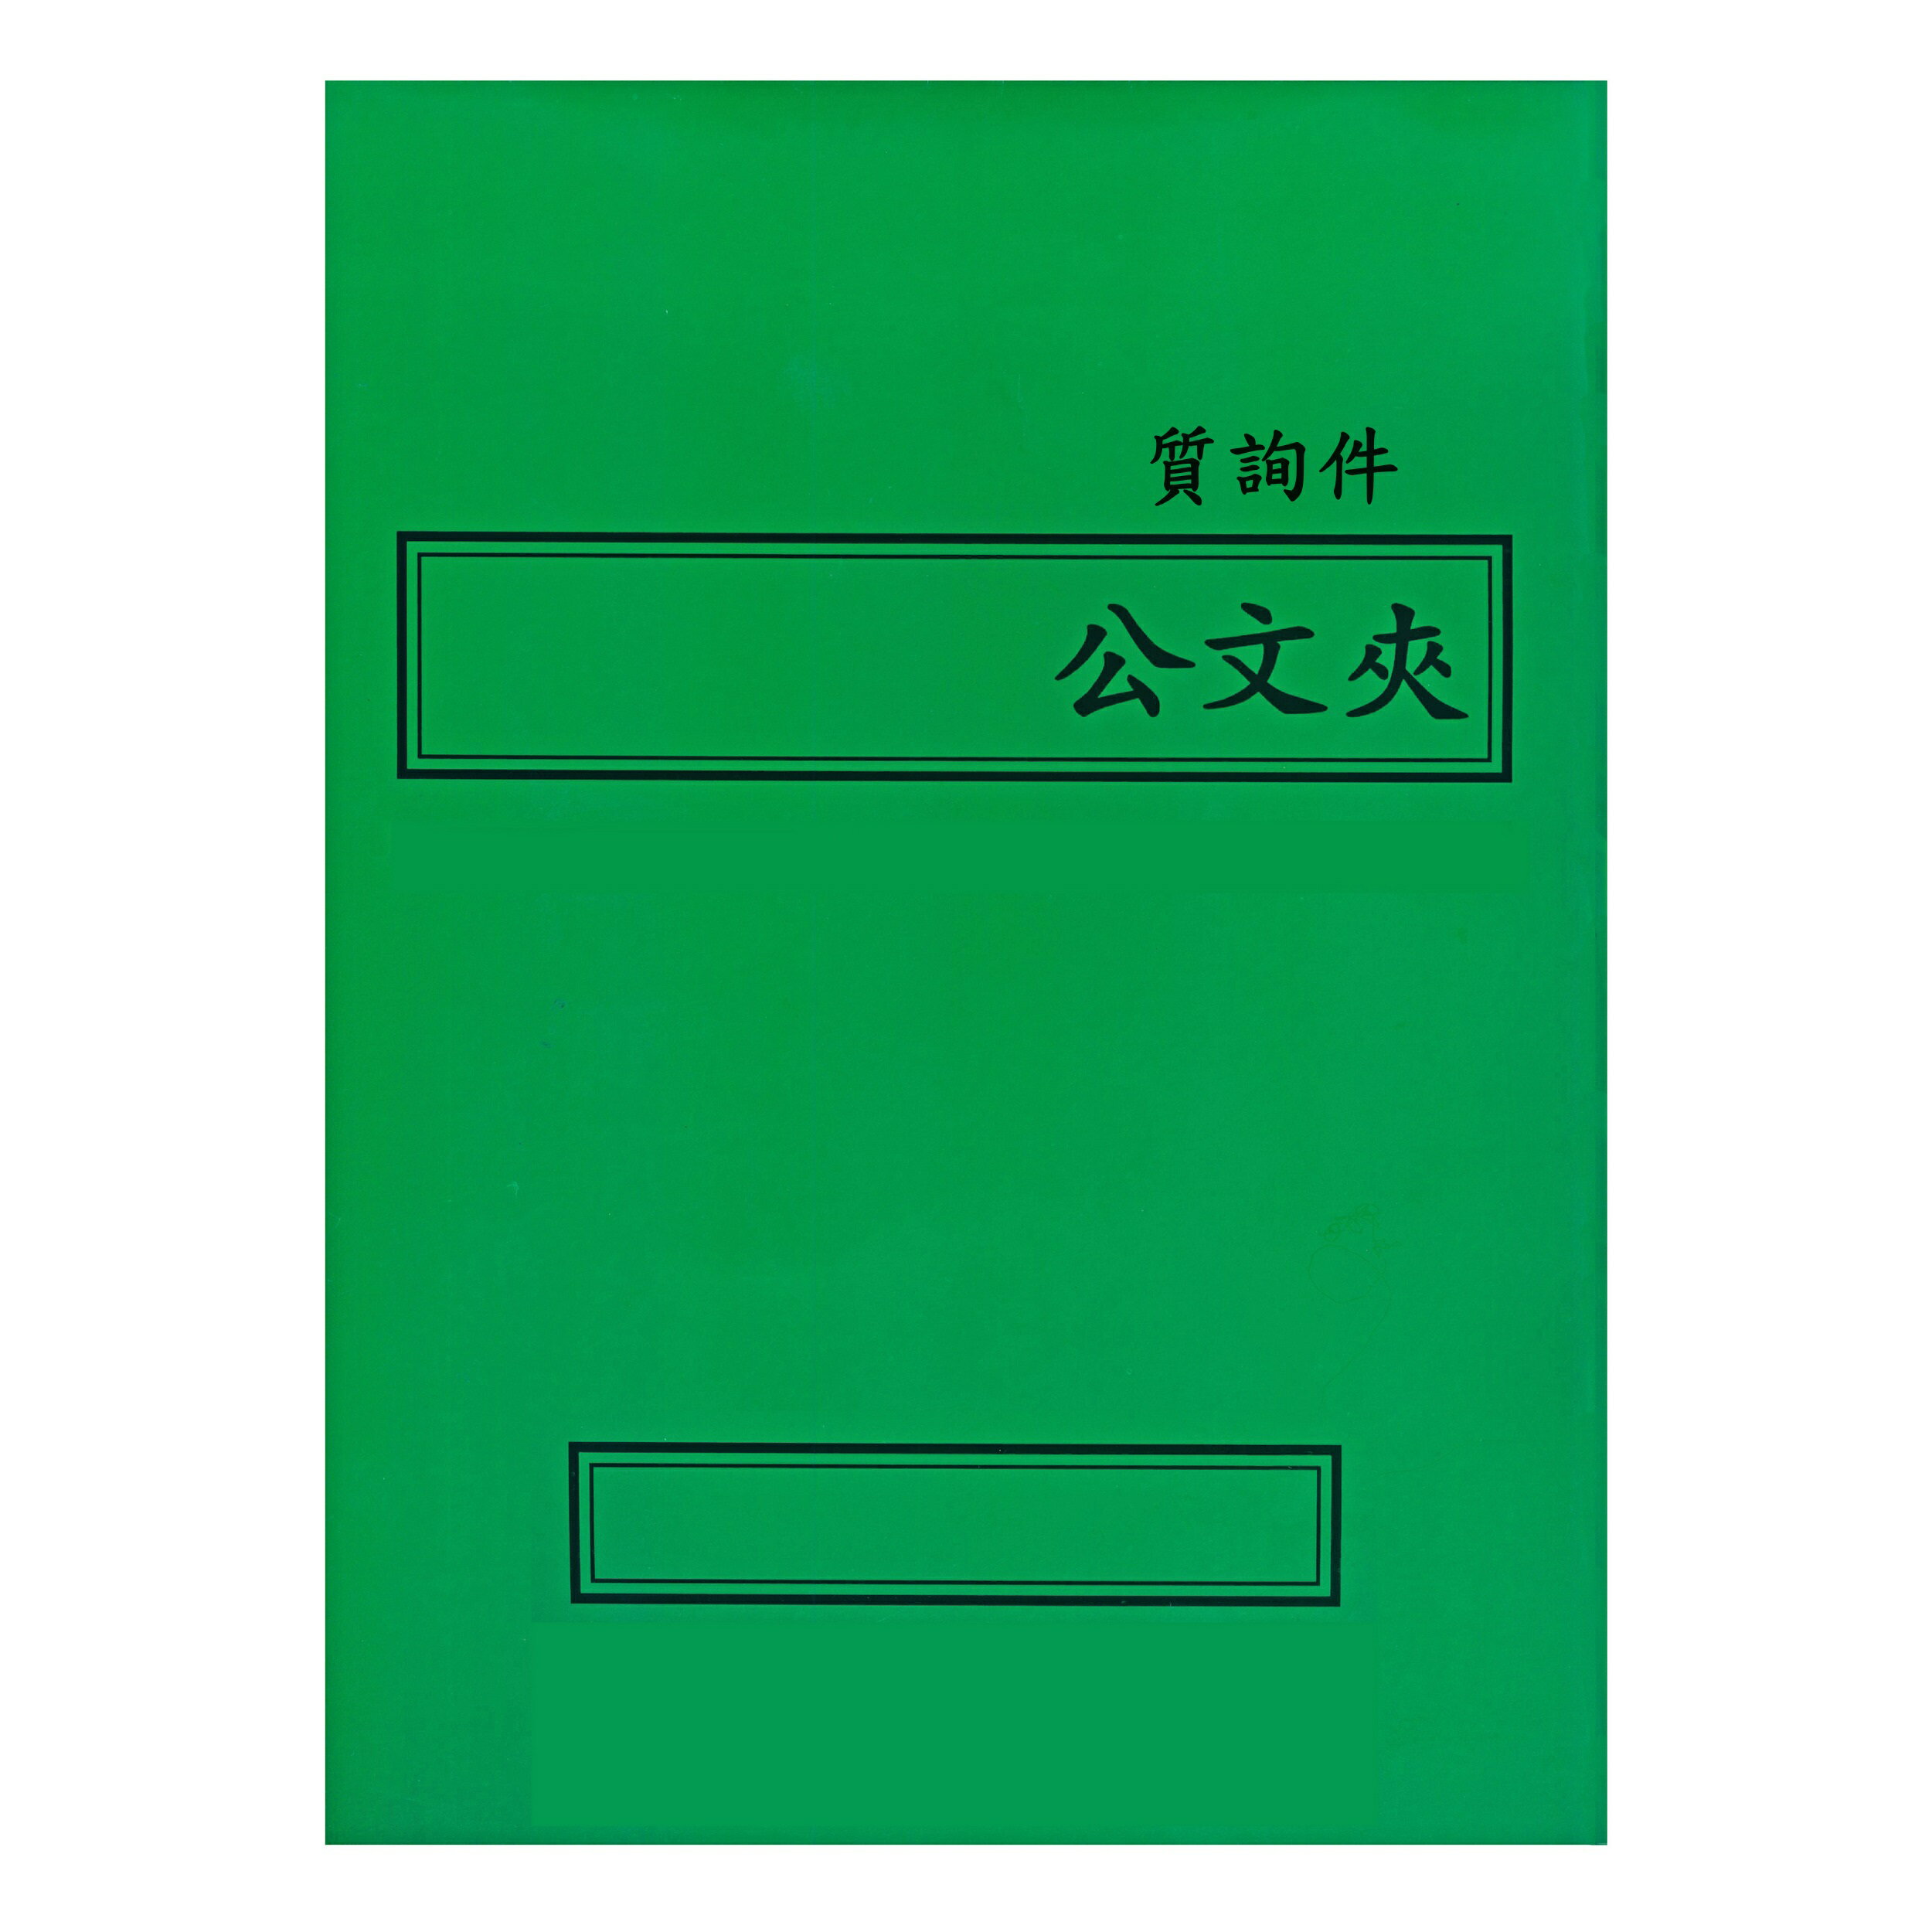 【文具通】紙質 卷宗 西式 橫式 綠色 答覆議員質詢案件 另有售保護套 T1010062